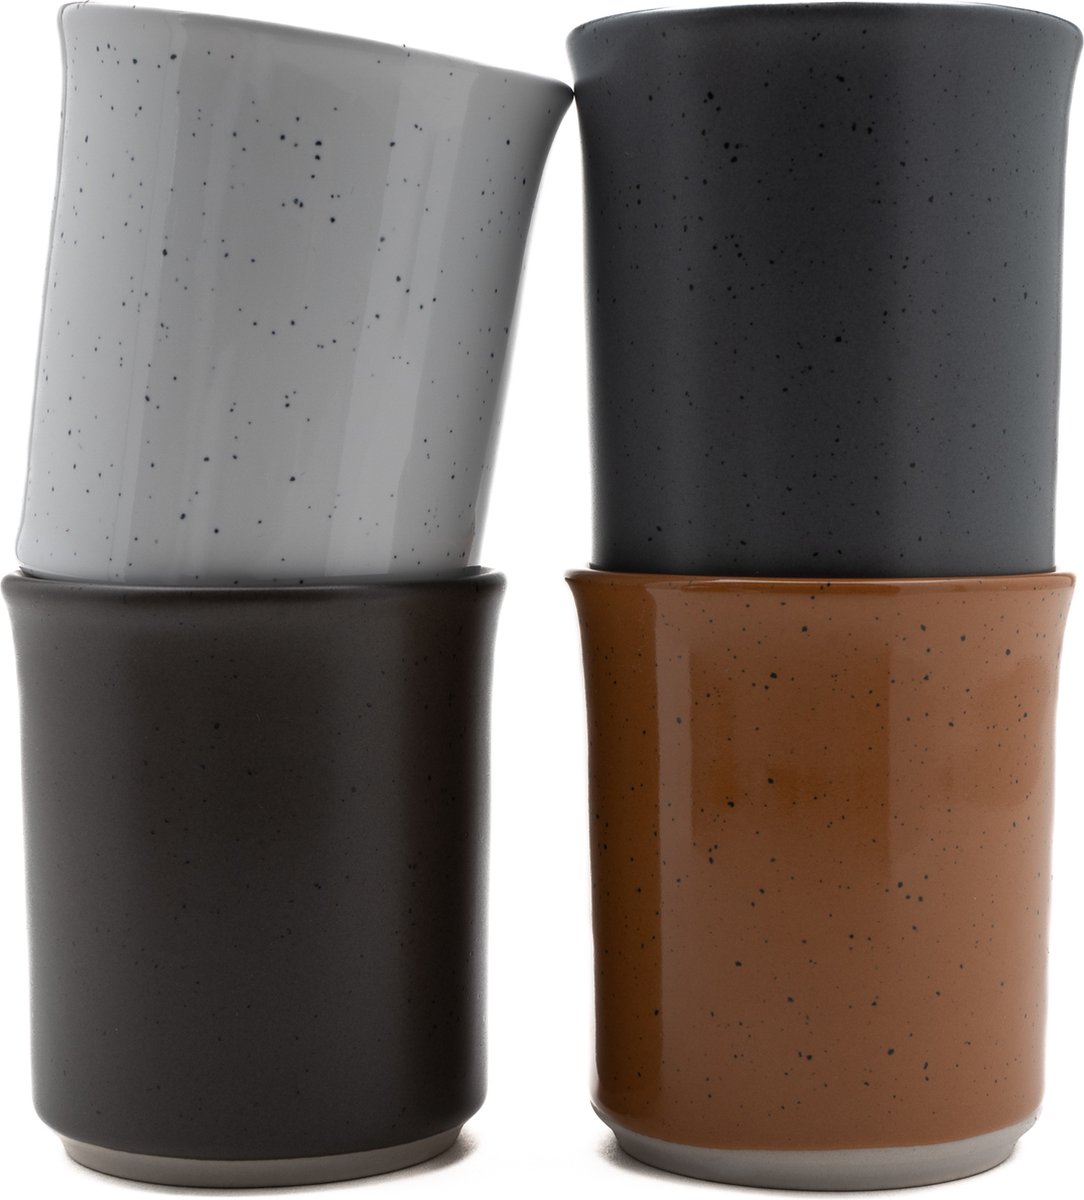 Koffiekopjes - koffiemok - koffiebeker - set van 4 kopjes - 150ML - keramiek - hip en trendy - kado voor hem & haar